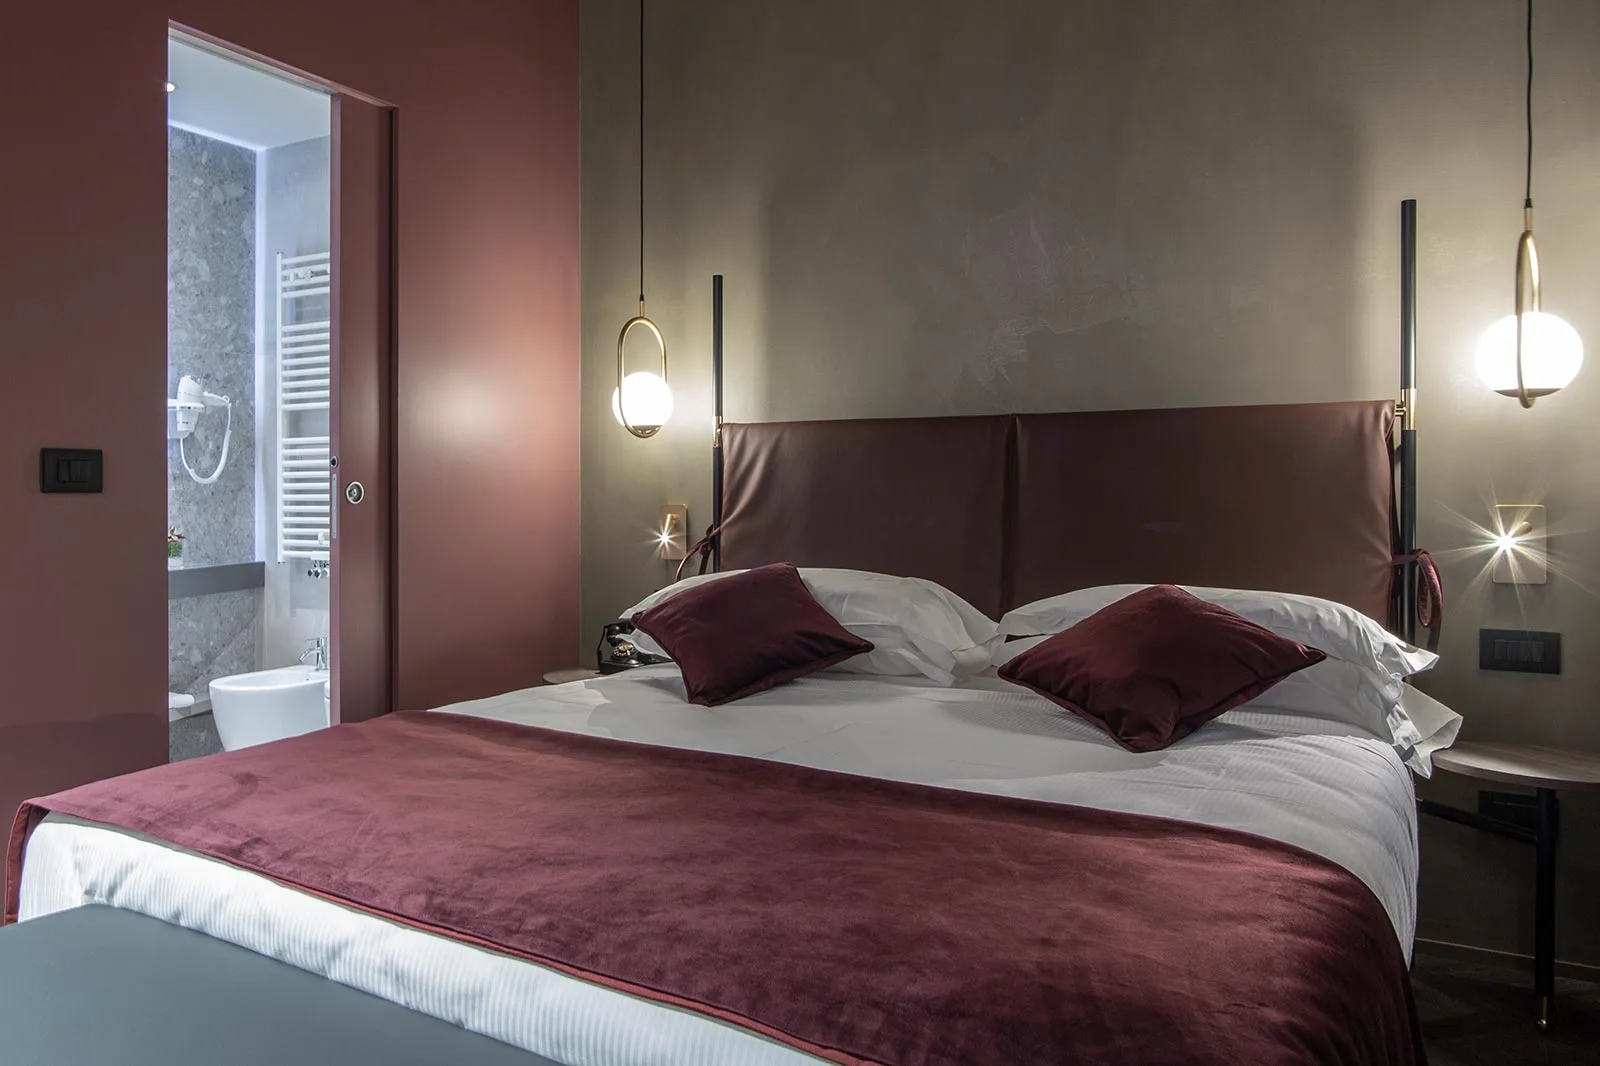 arredamento hotel camera letto testata colori dettagli illuminazione